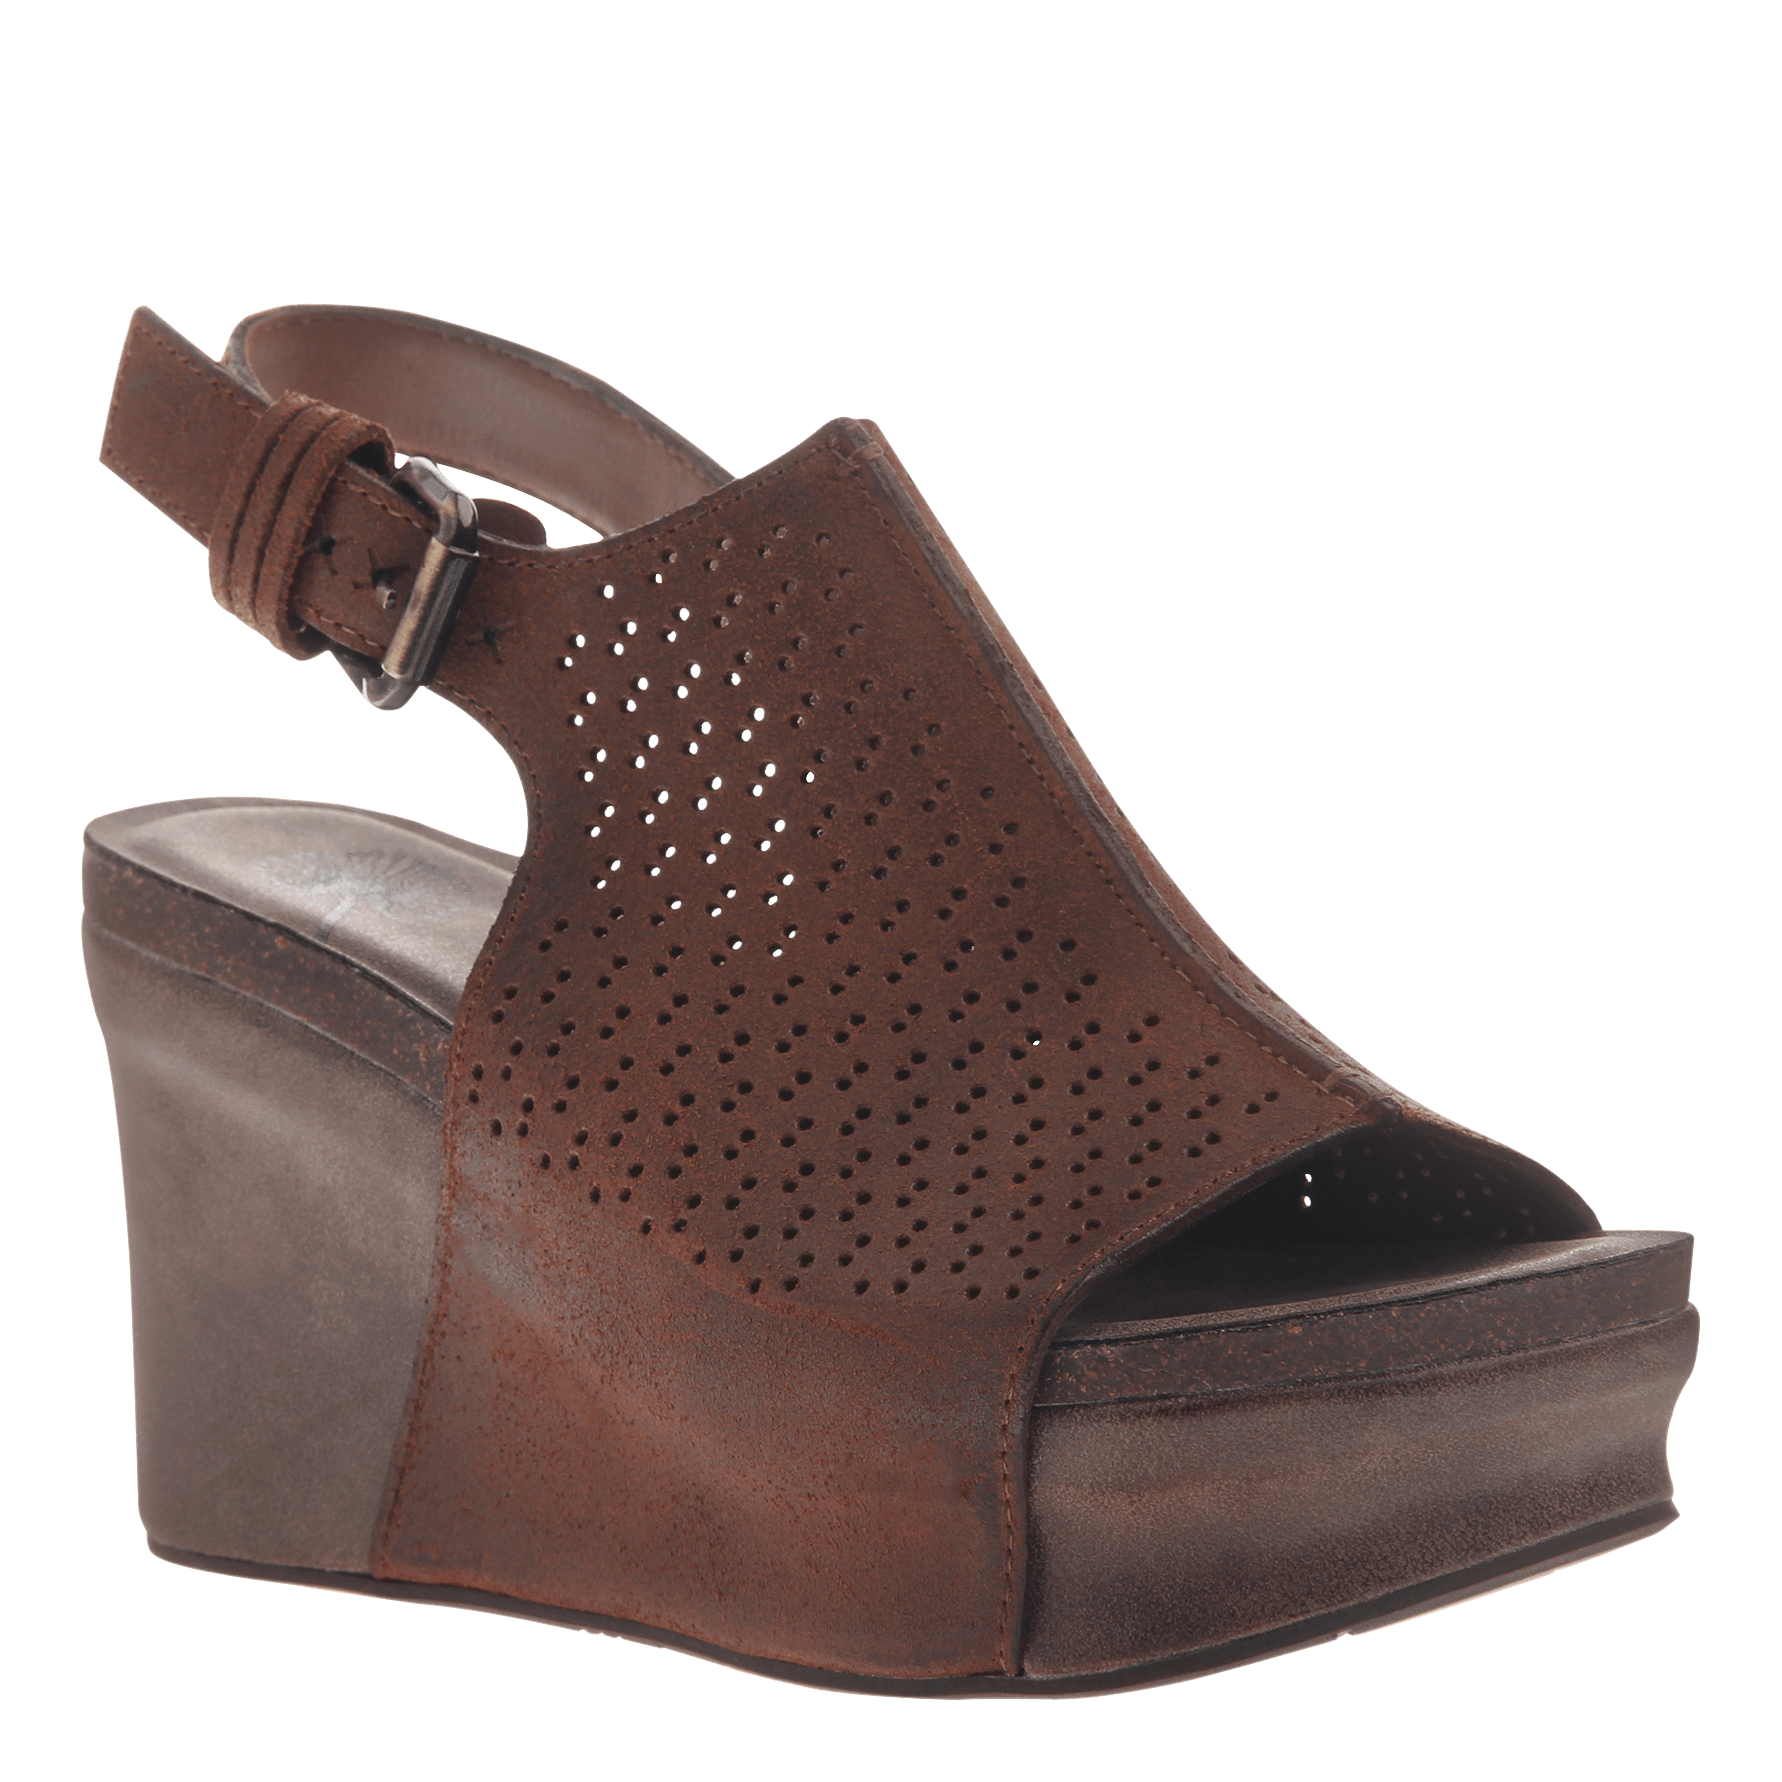 Jaunt in New Tan Wedge Sandals | Women 